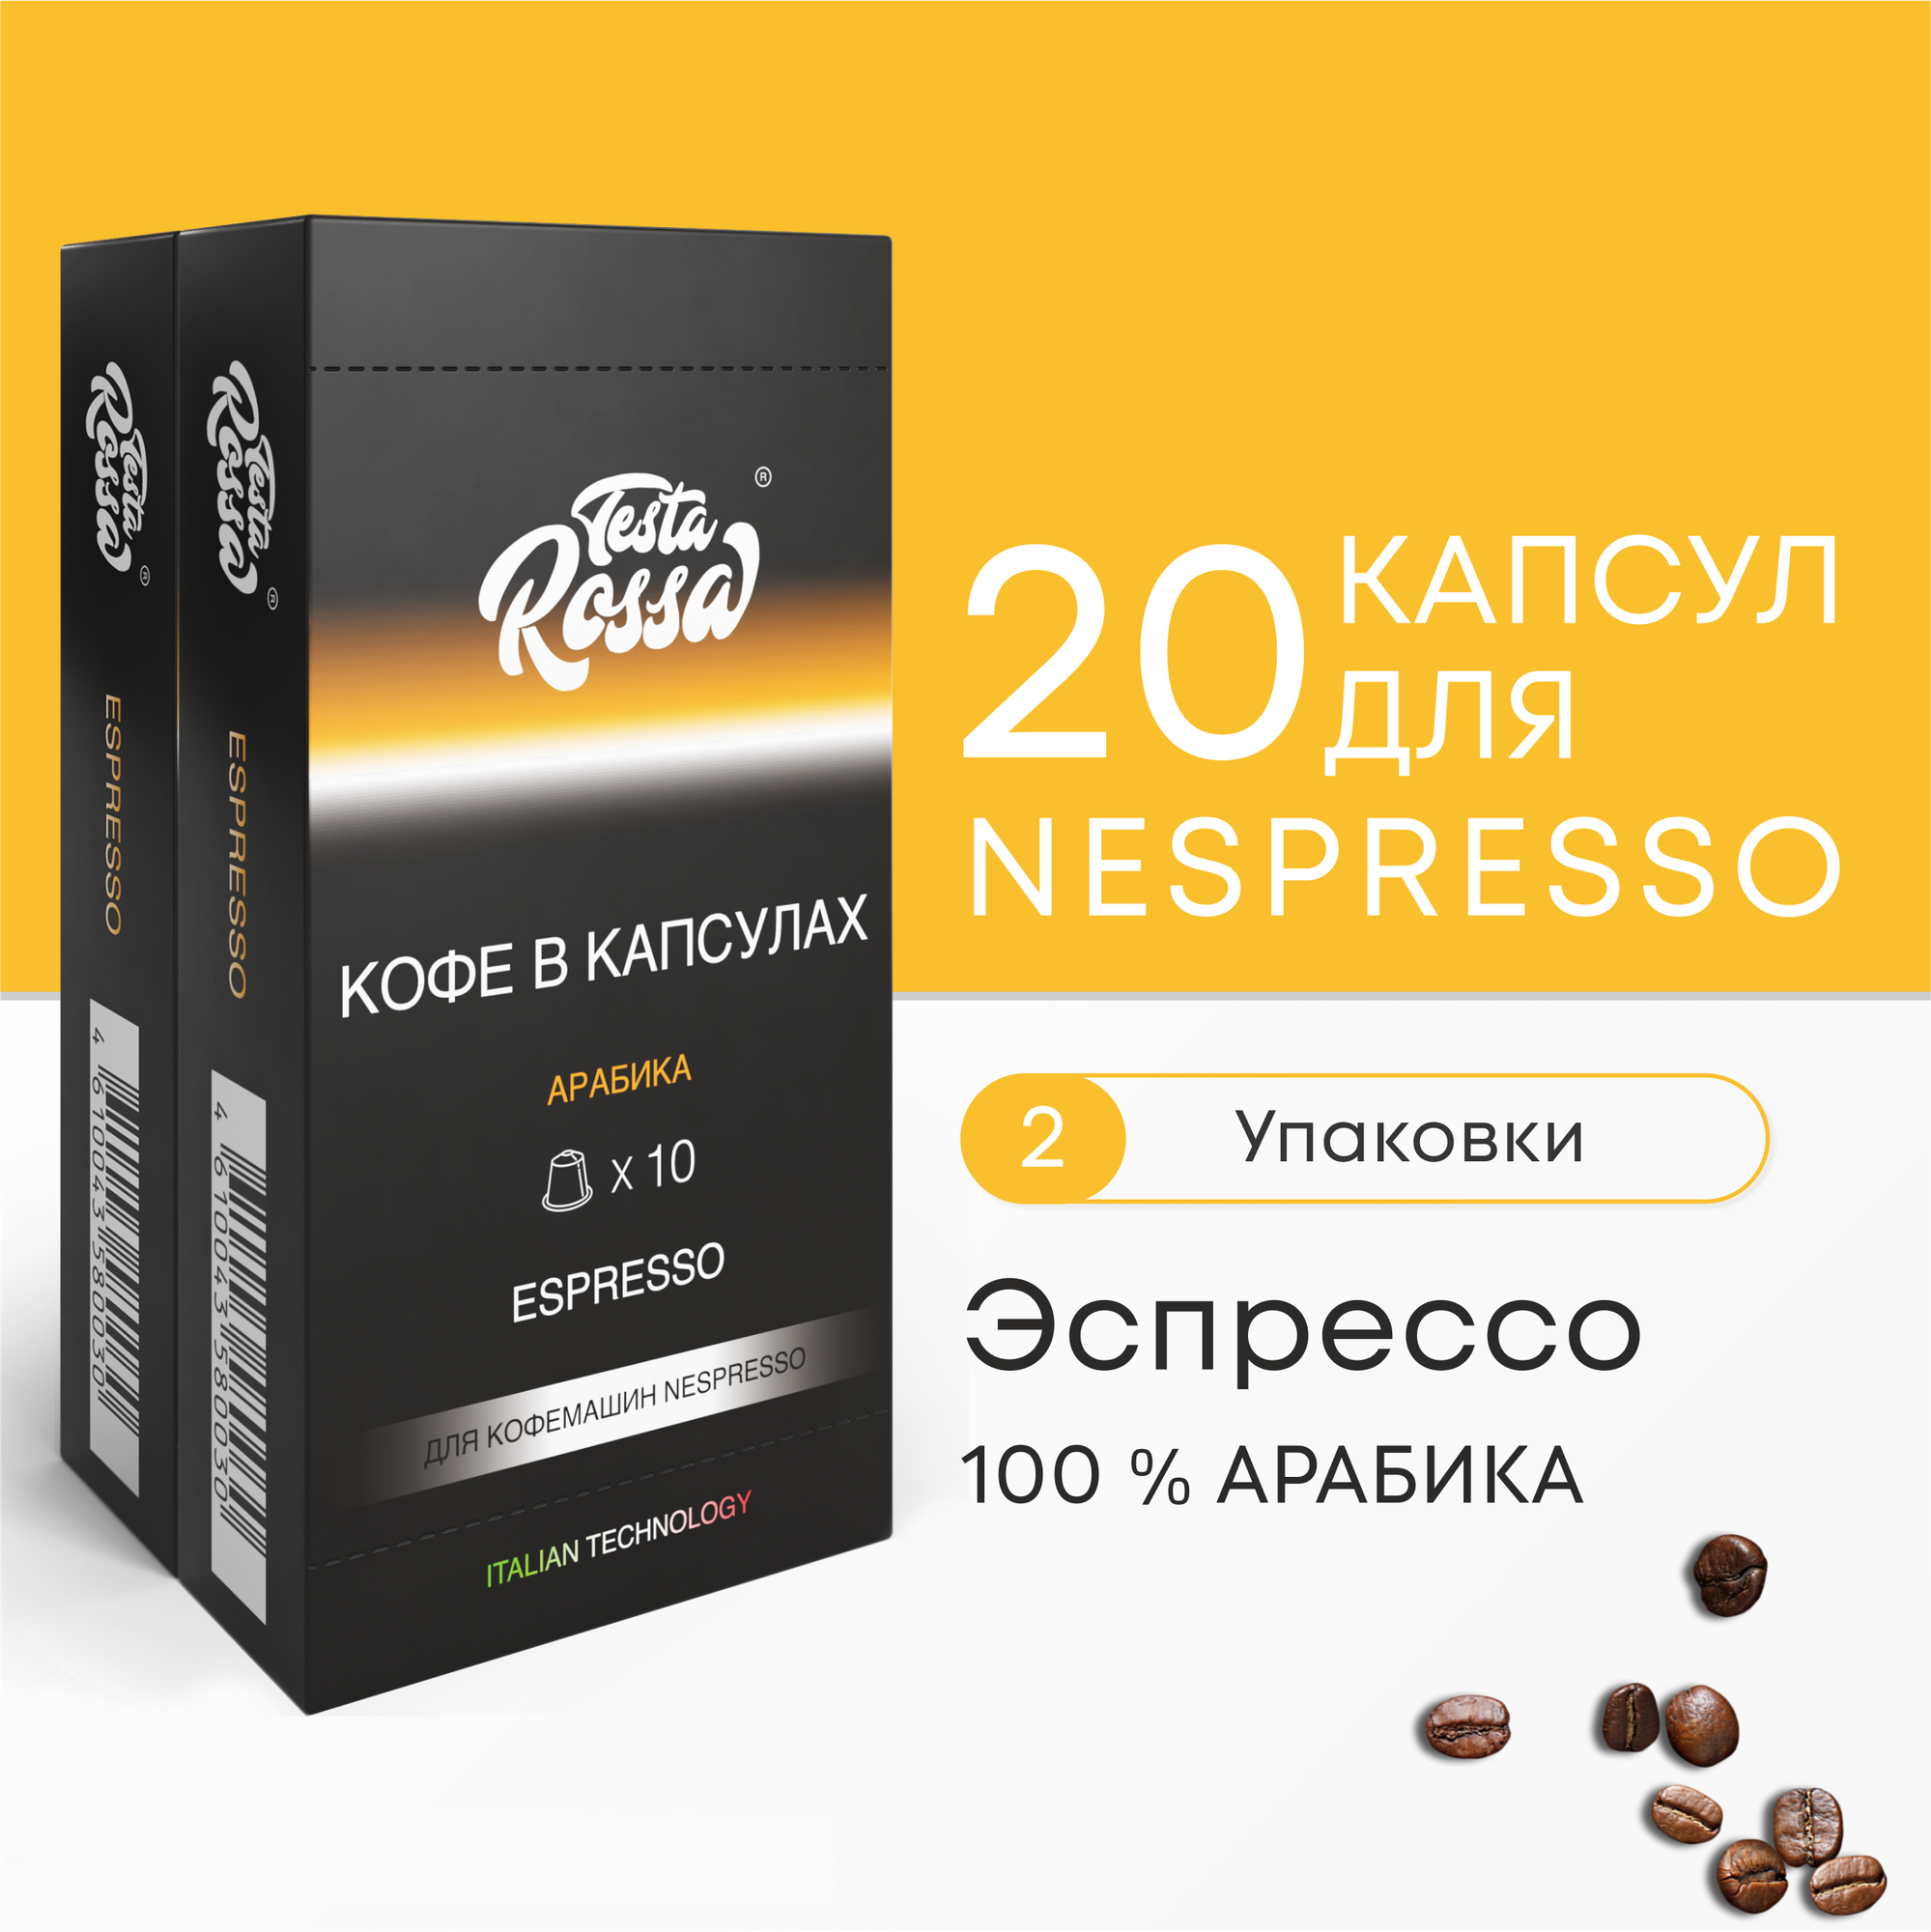 Эспрессо Арабика 100% - Капсулы Testa Rossa - 20 шт, набор кофе в капсулах неспрессо, для кофемашины NESPRESSO - фотография № 2